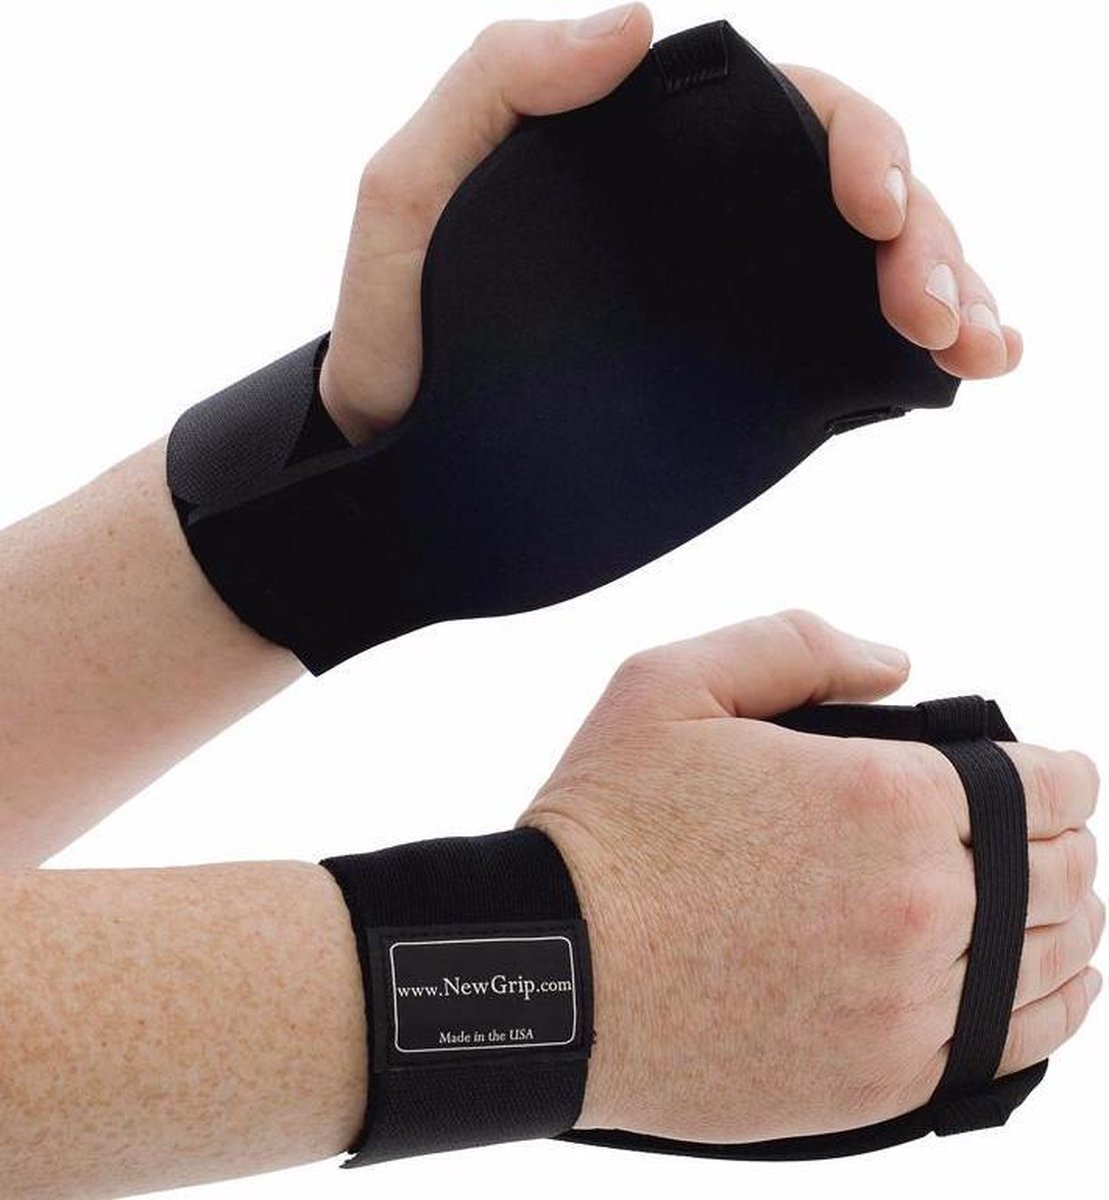 NewGrip Fitness Handschoenen - maat L